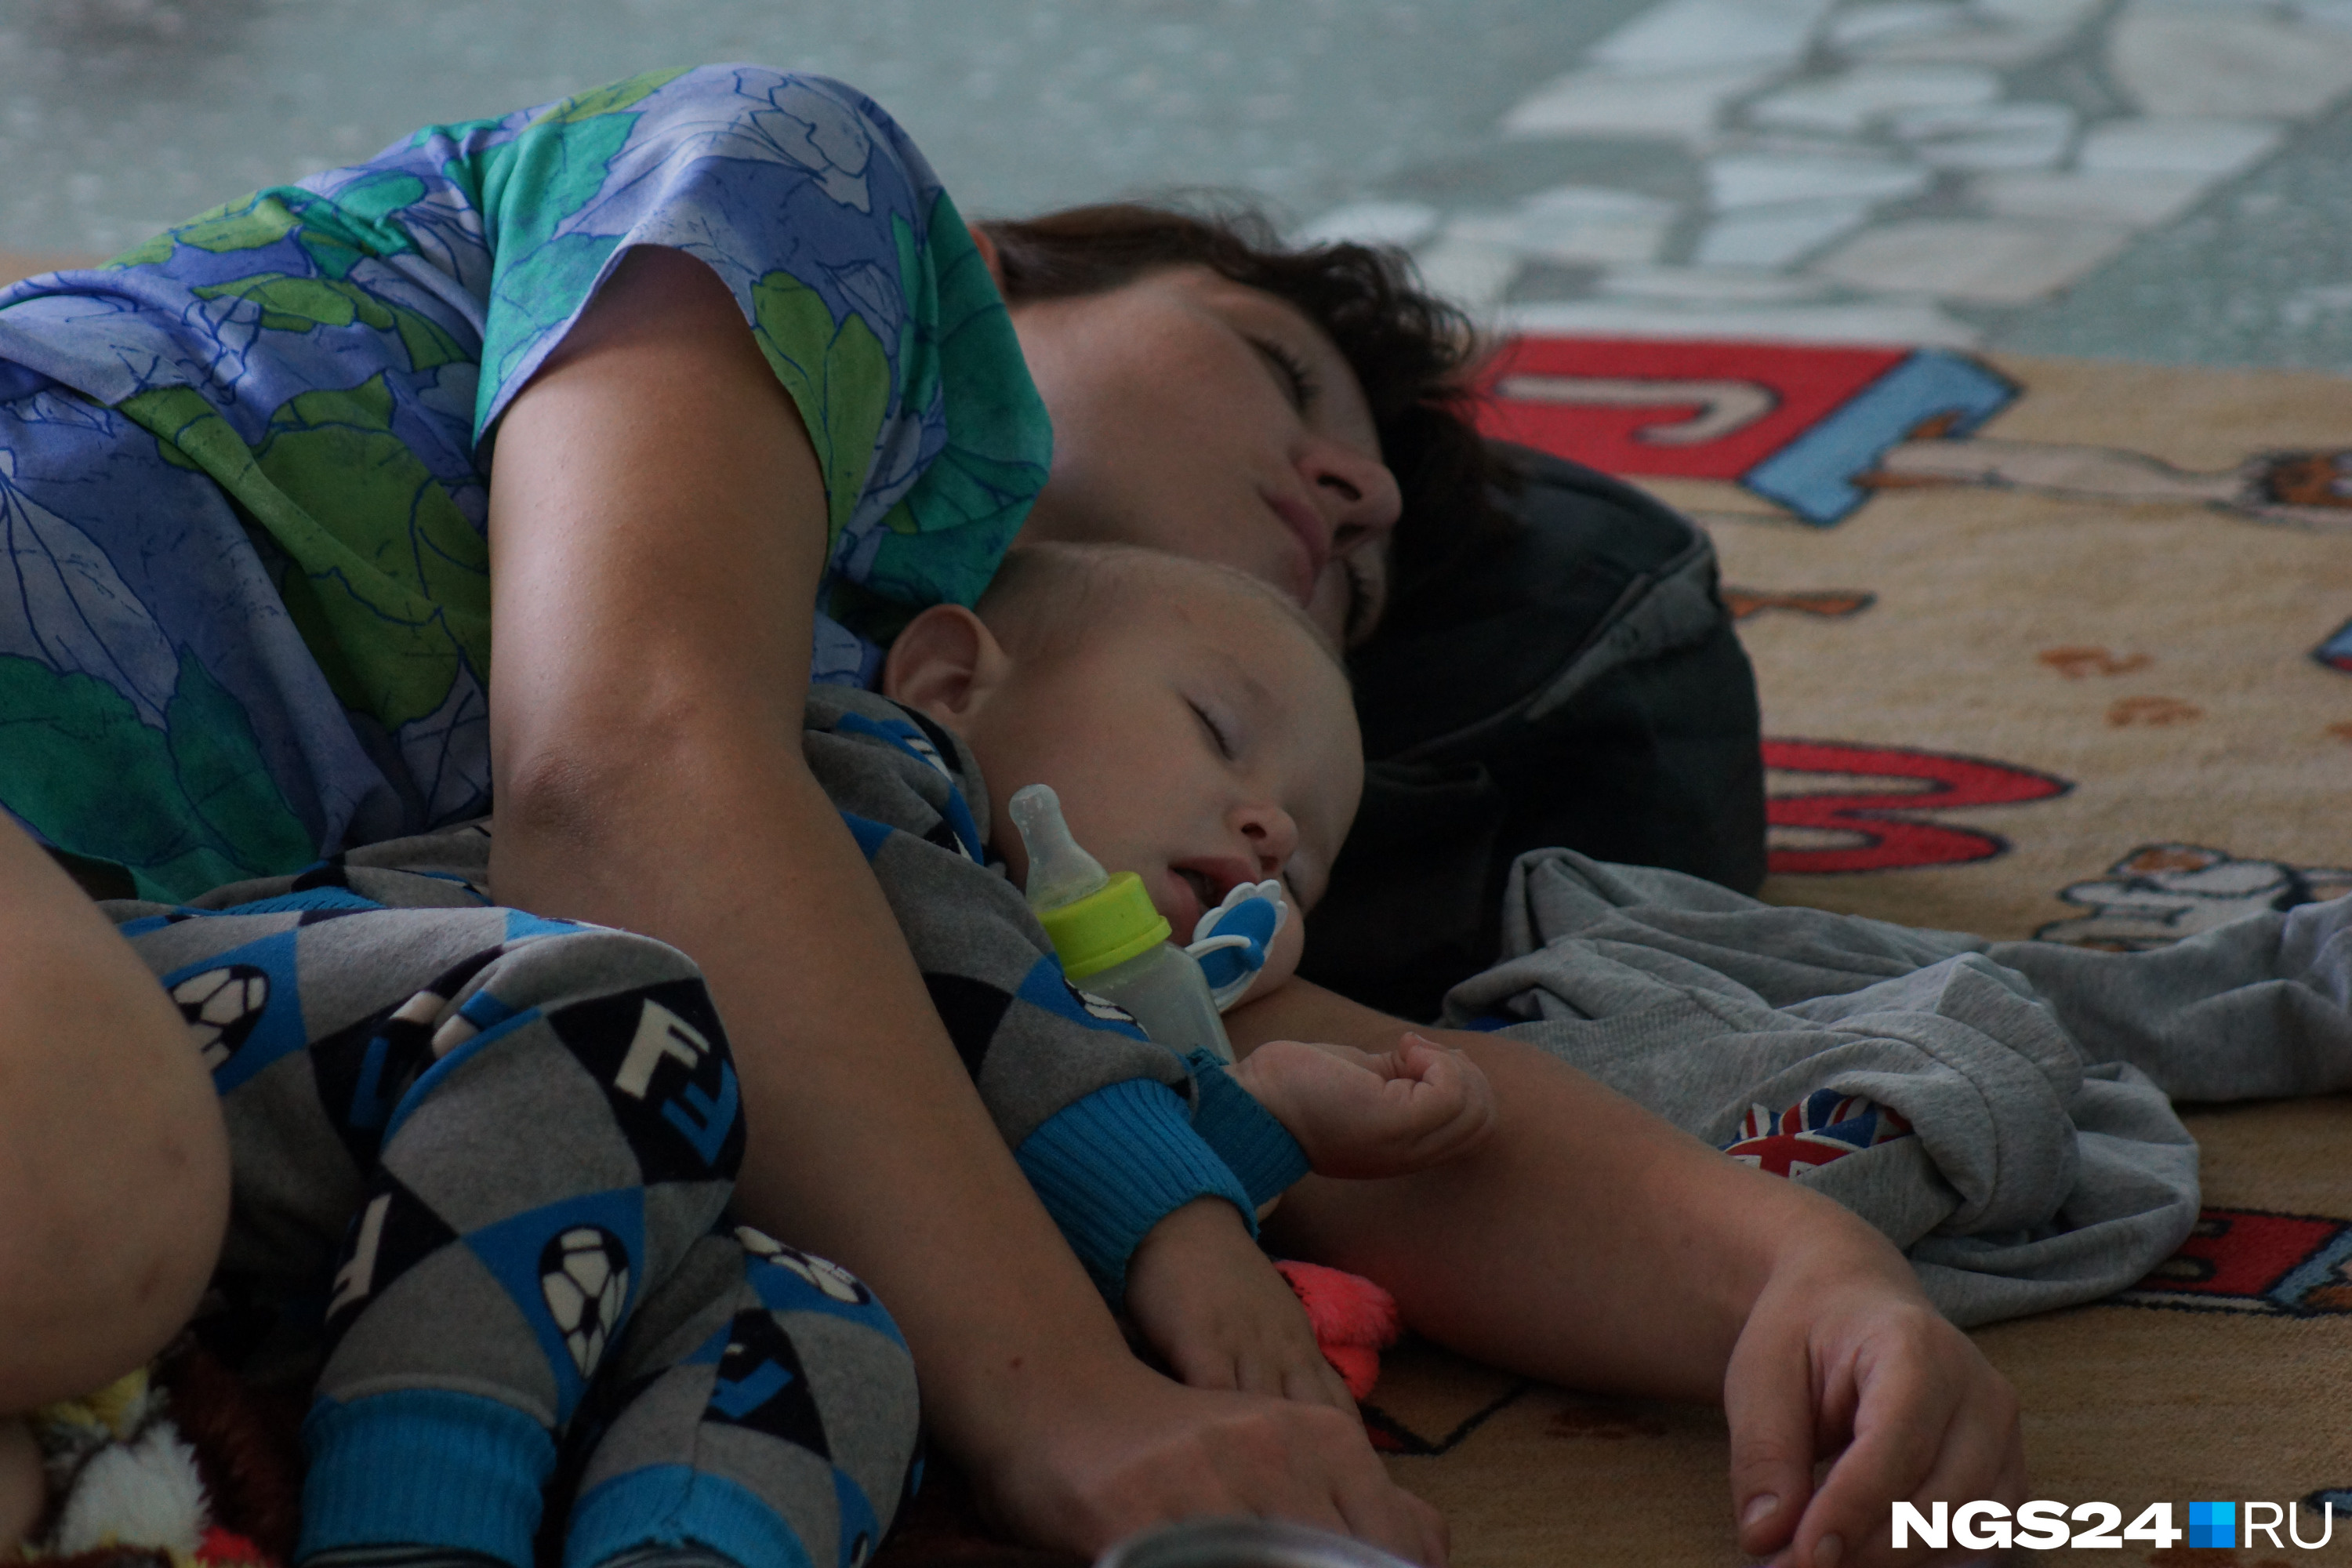 Даже семьям с маленькими детьми приходилось спать на полу